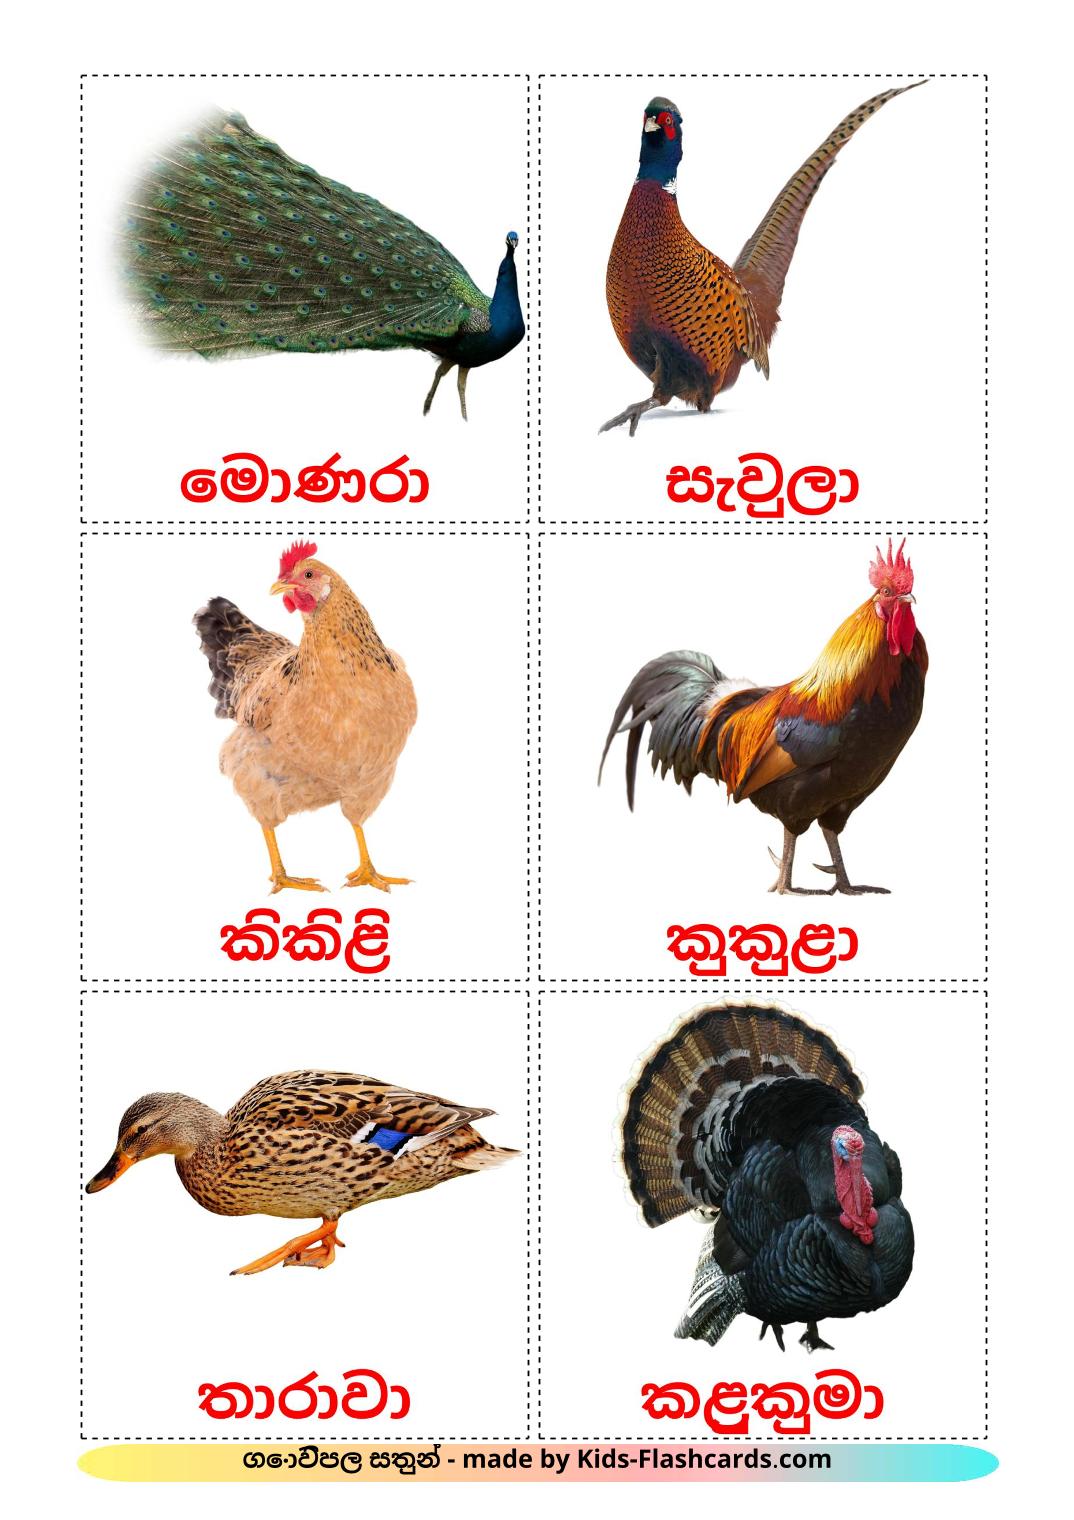 Les Oiseaux de Ferme - 11 Flashcards cinghalais imprimables gratuitement